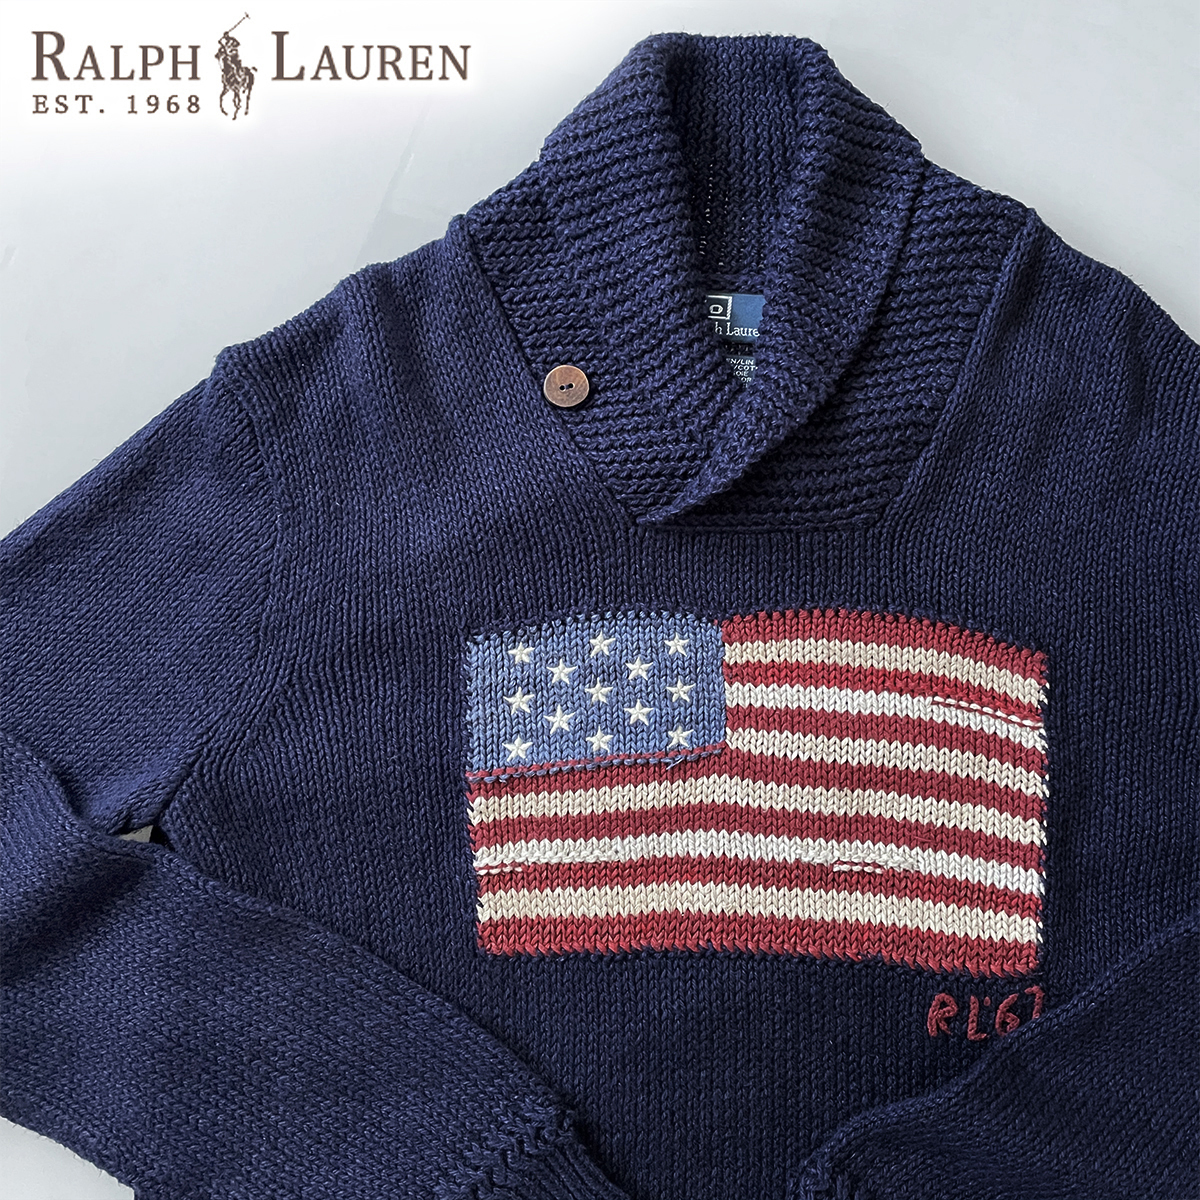 Ralph Lauren 星条旗 柄 セーター 紺 ネイビー 綿 コットン ニット 丸